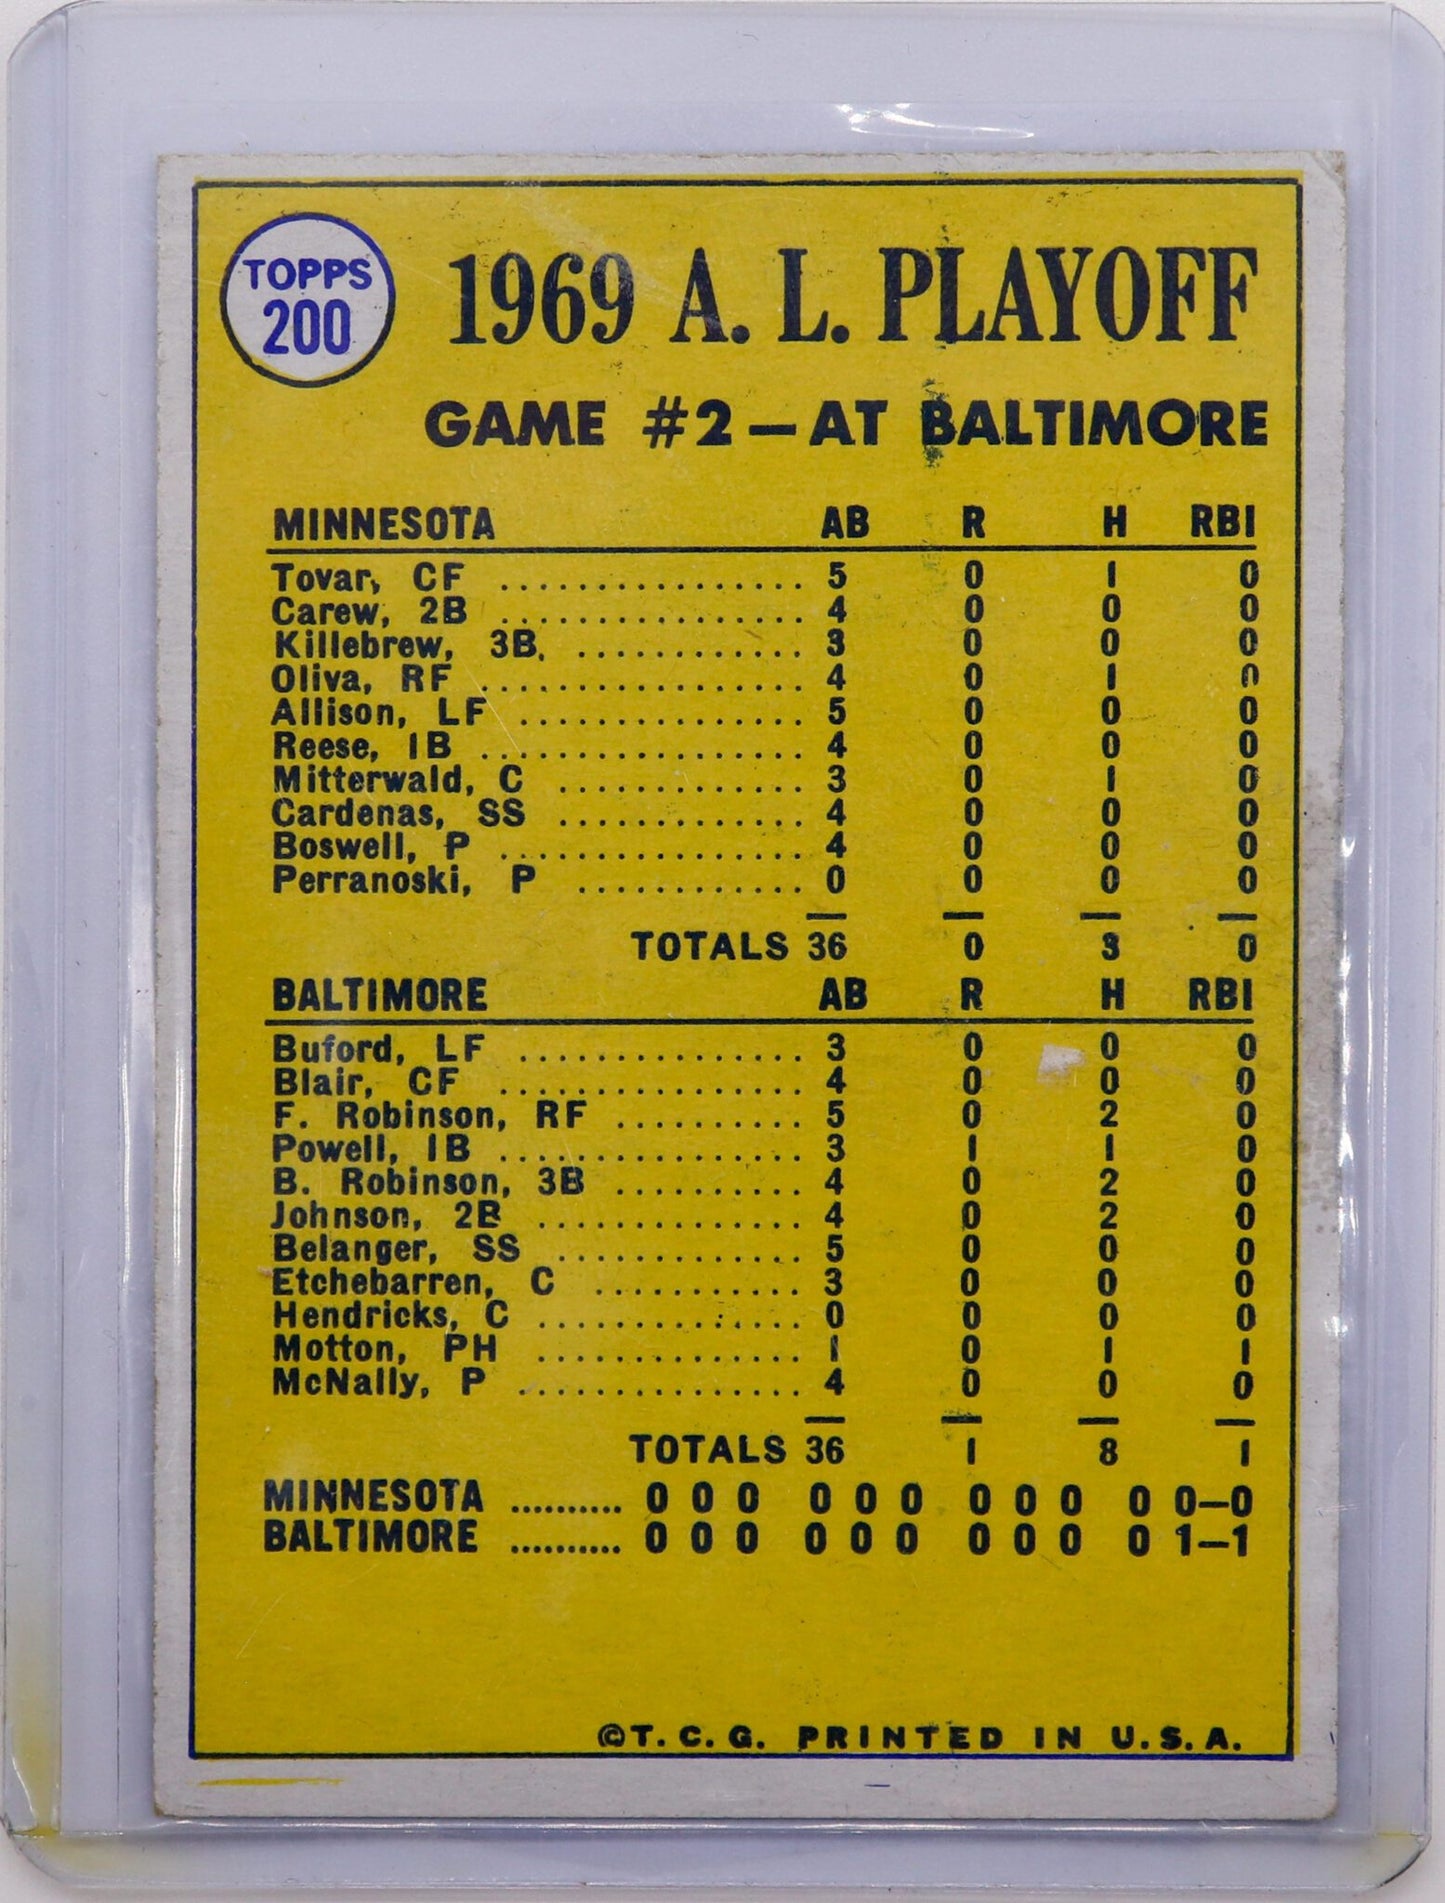 1970 Topps American League Playoffs “Powell Scores Winning Run!” Card #200, Good